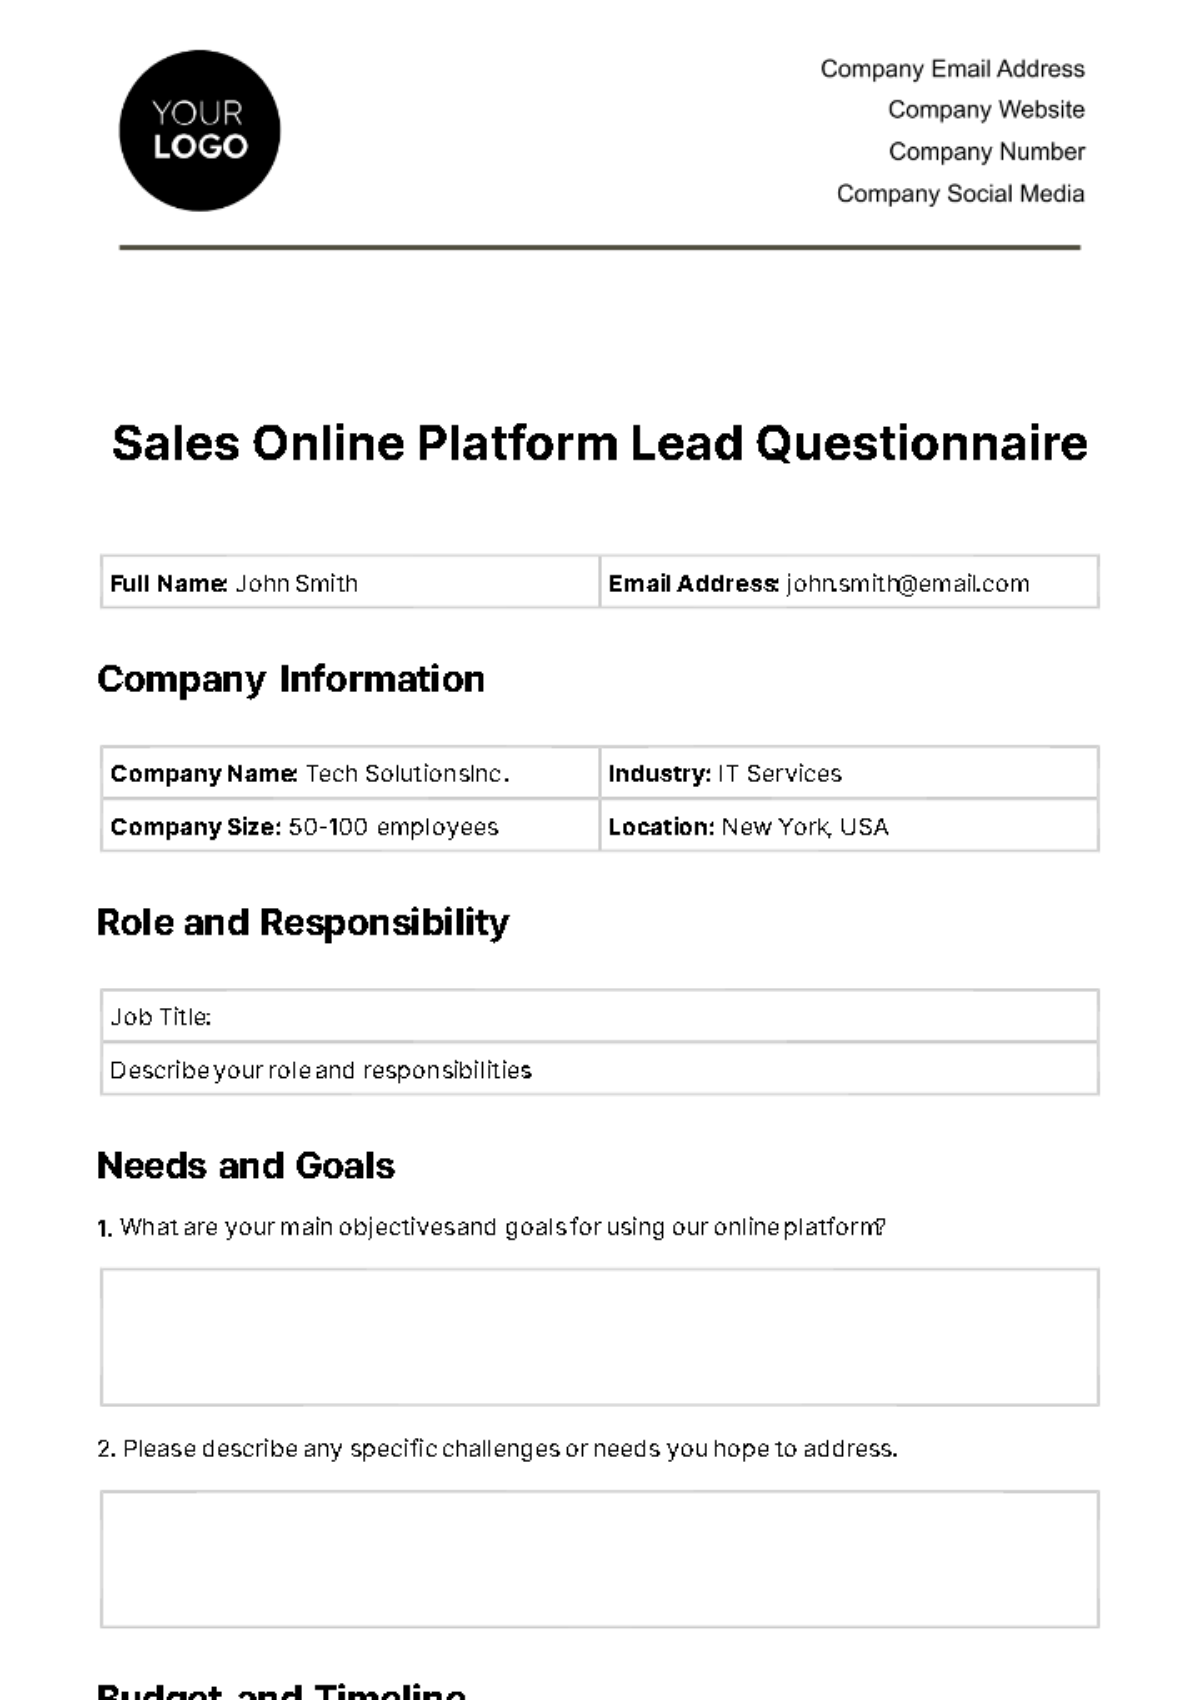 Sales Online Platform Lead Questionnaire Template